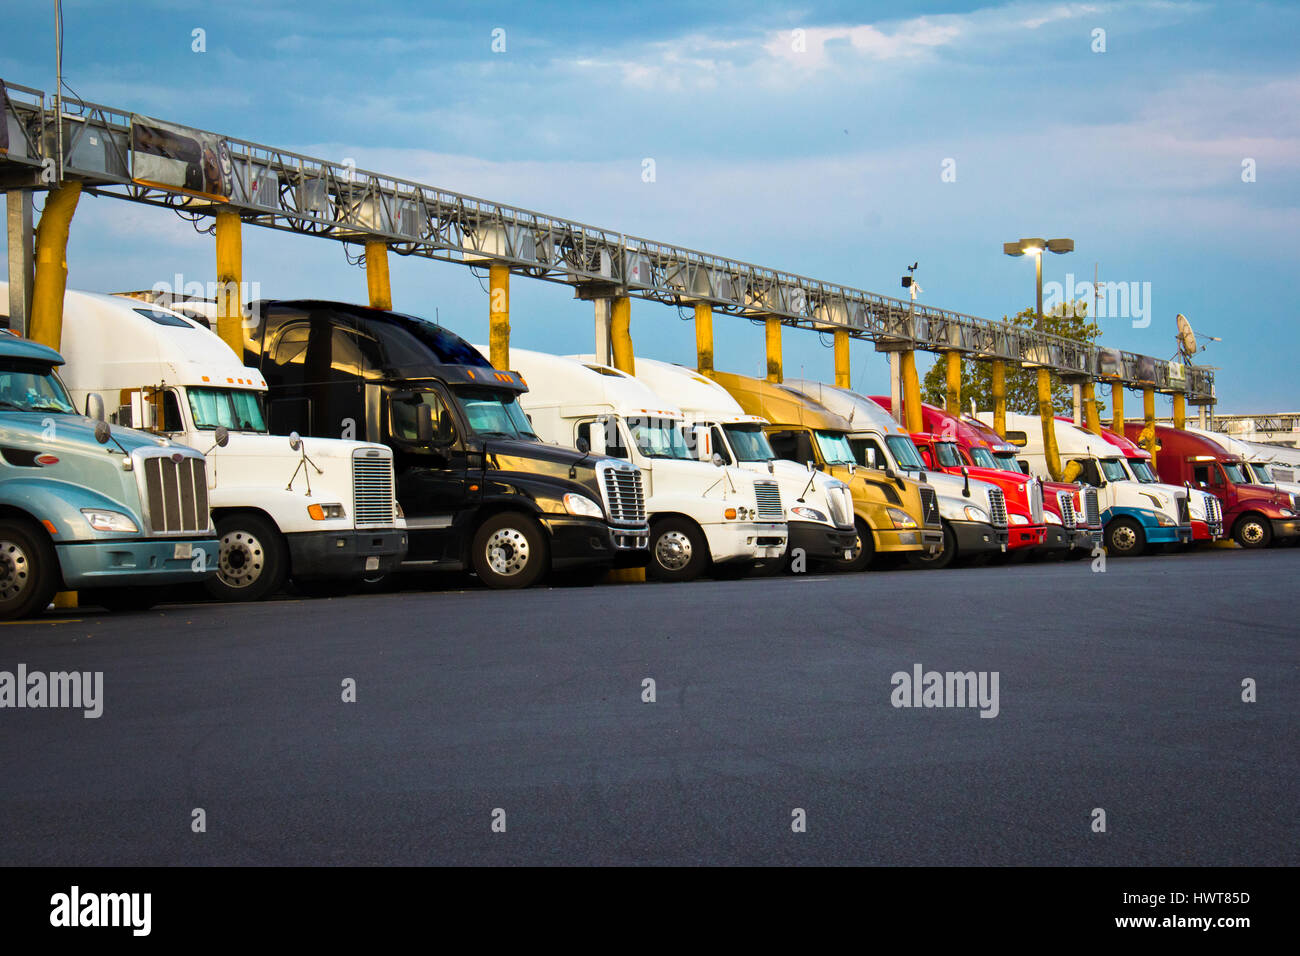 Großer Kraftstofftank eines LKW in Camouflage Farben, beschriftet mit Diesel  Stockfotografie - Alamy